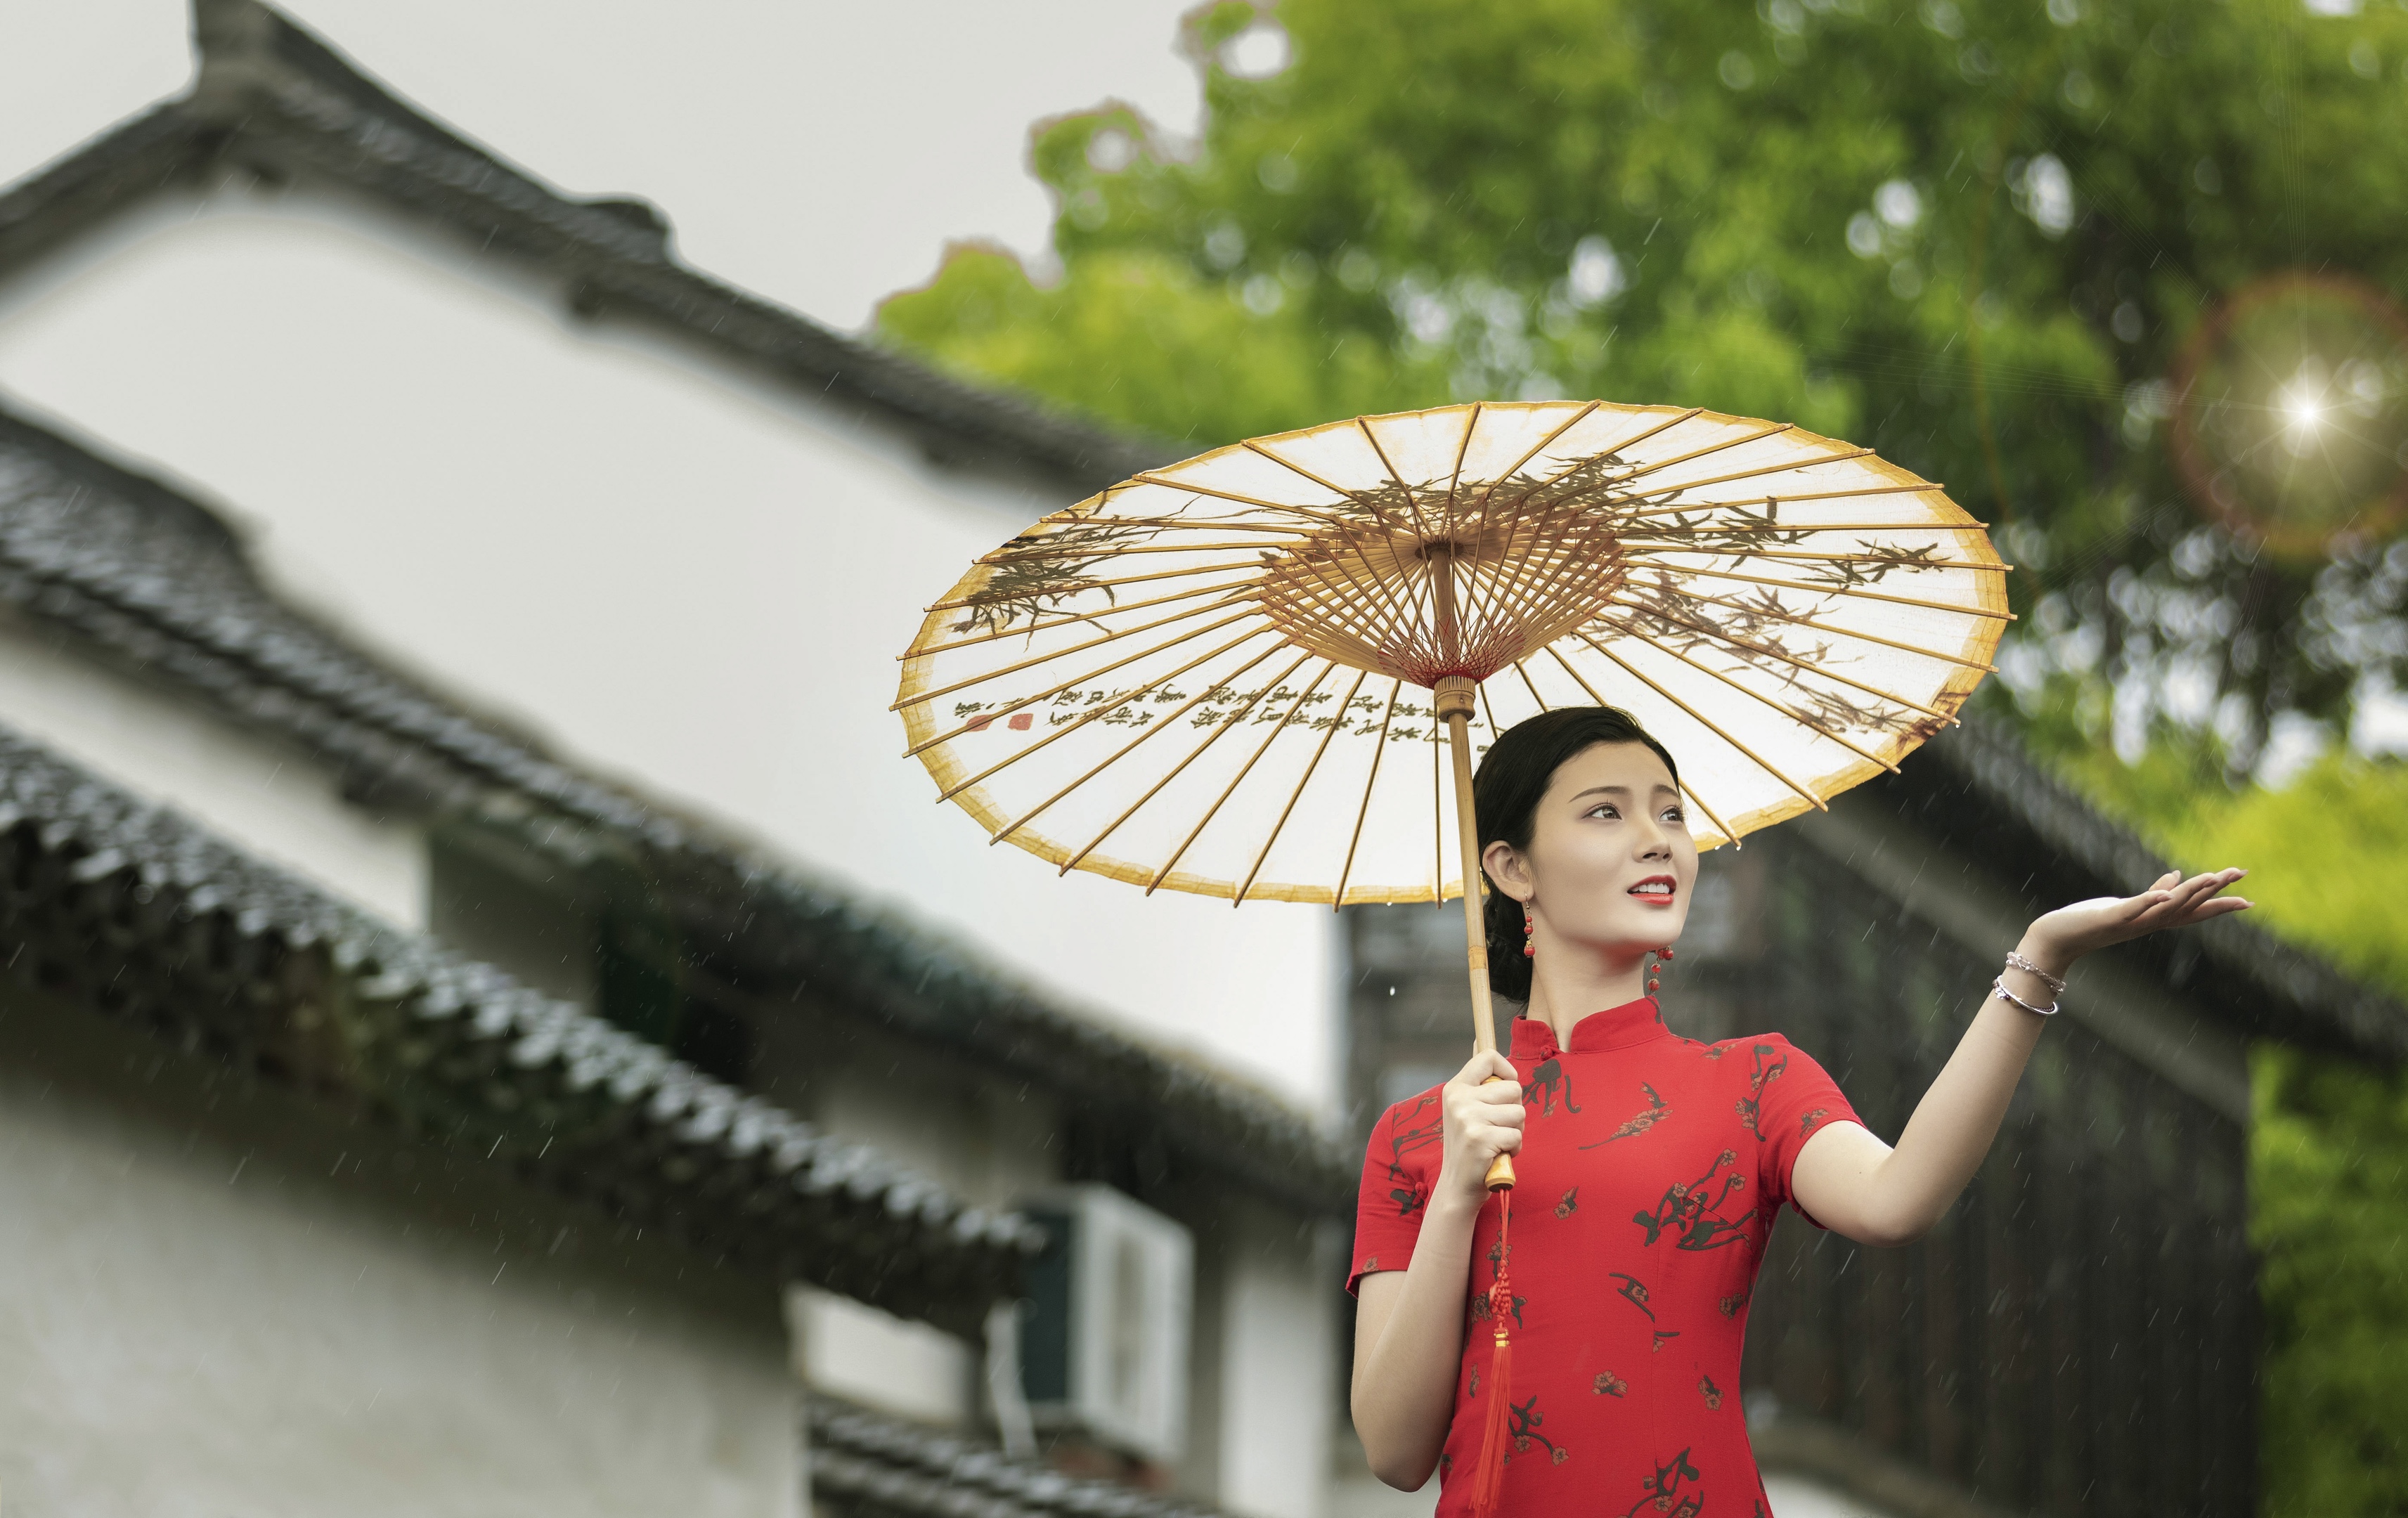 《古镇旗袍》拍摄于上海新场古镇